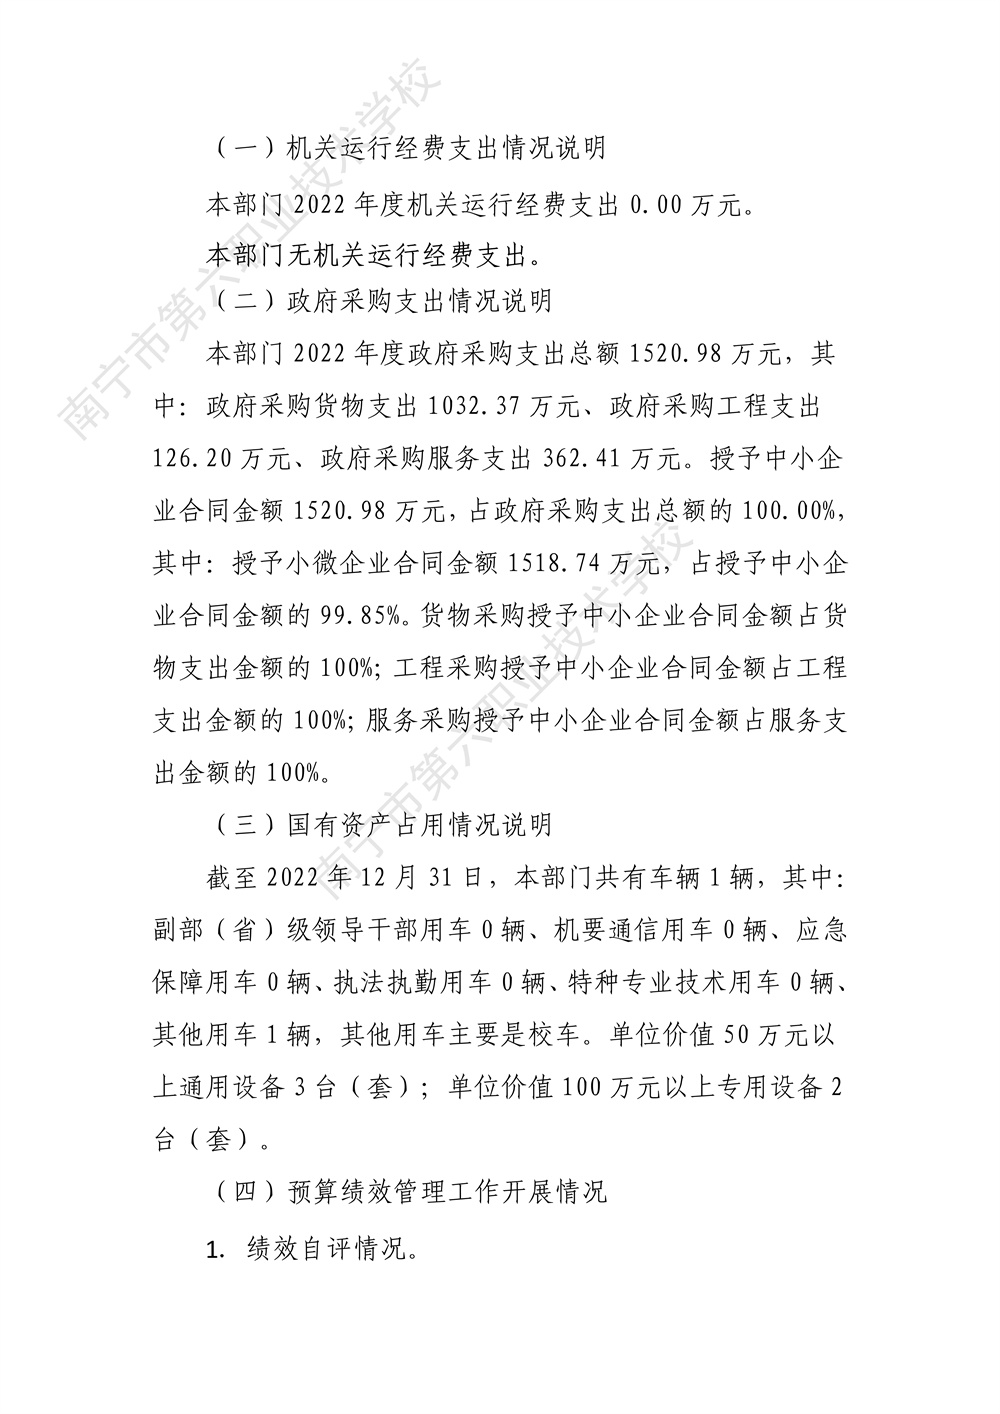 南宁市第六职业技术学校2022年度部门决算公开（终版）_34.jpg